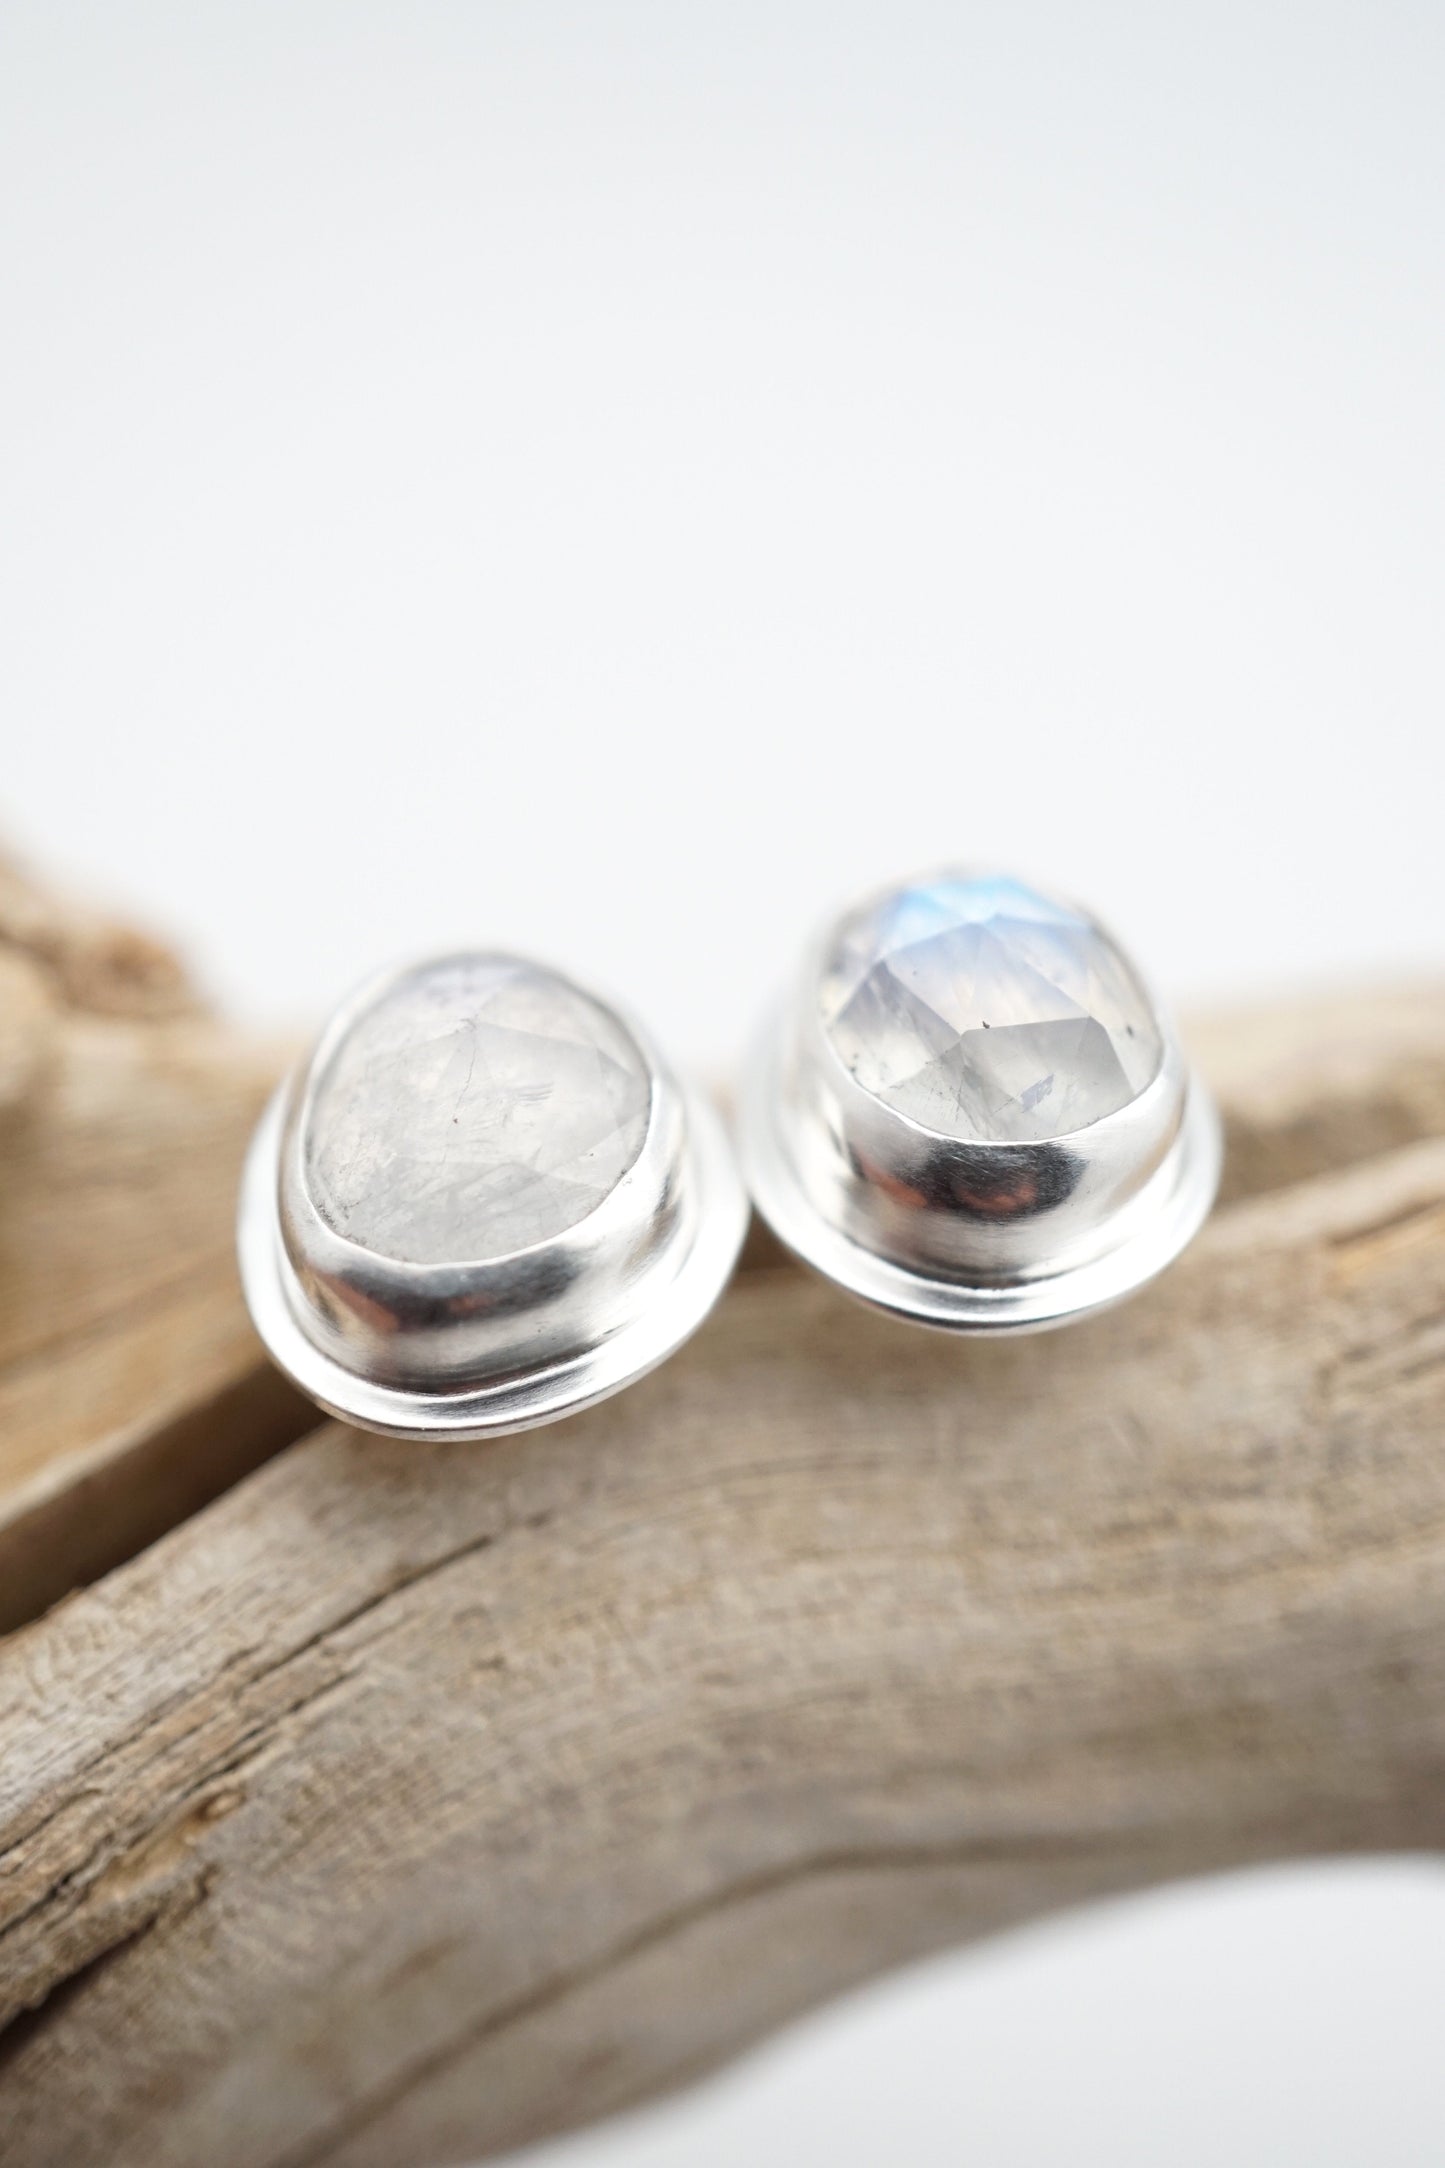 faceted rainbow moonstone stud earrings - Lumenrose